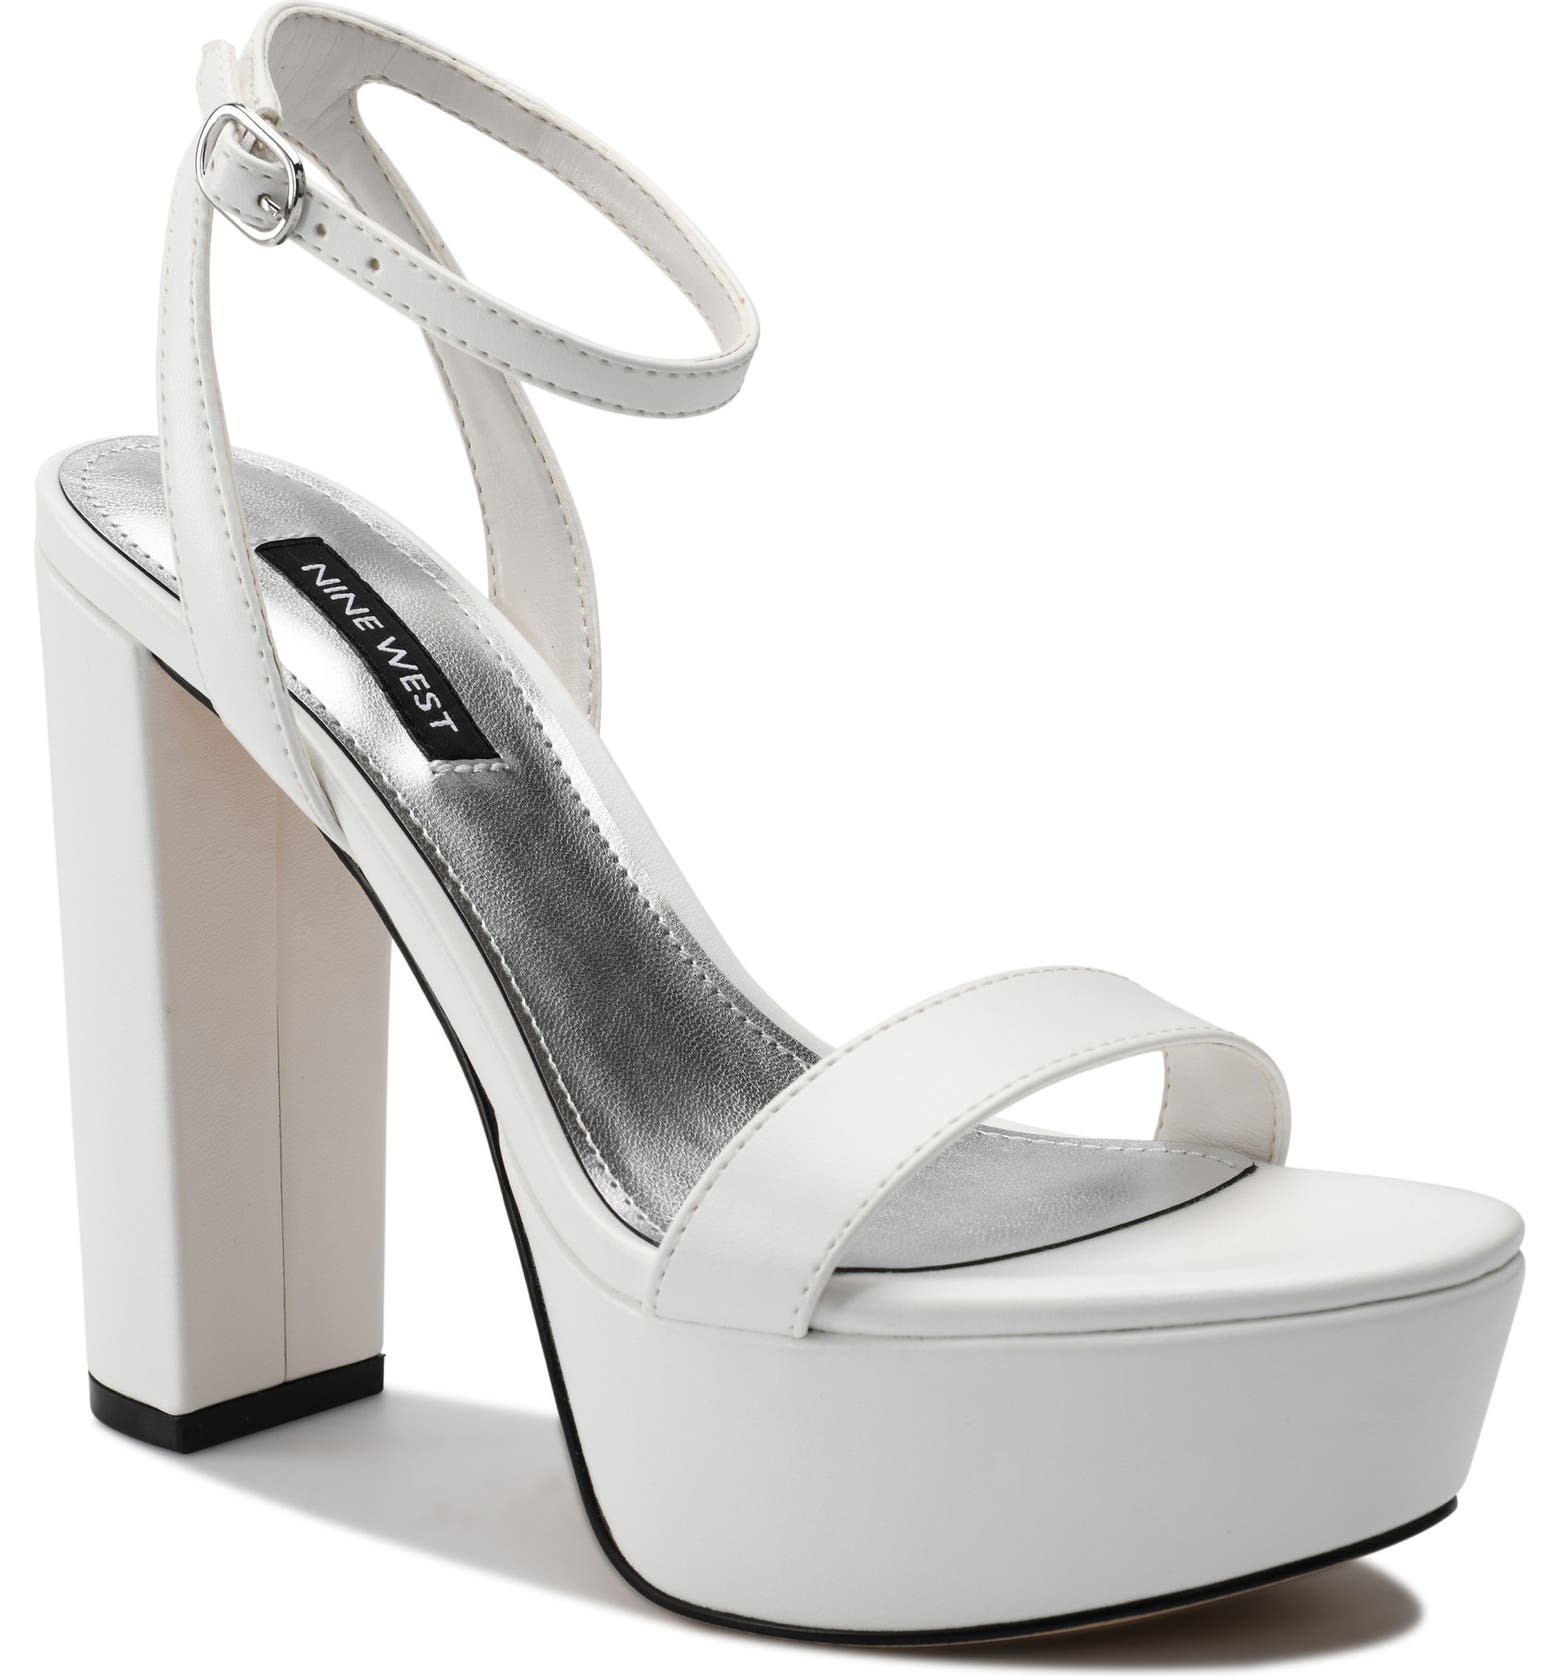 White platform heels